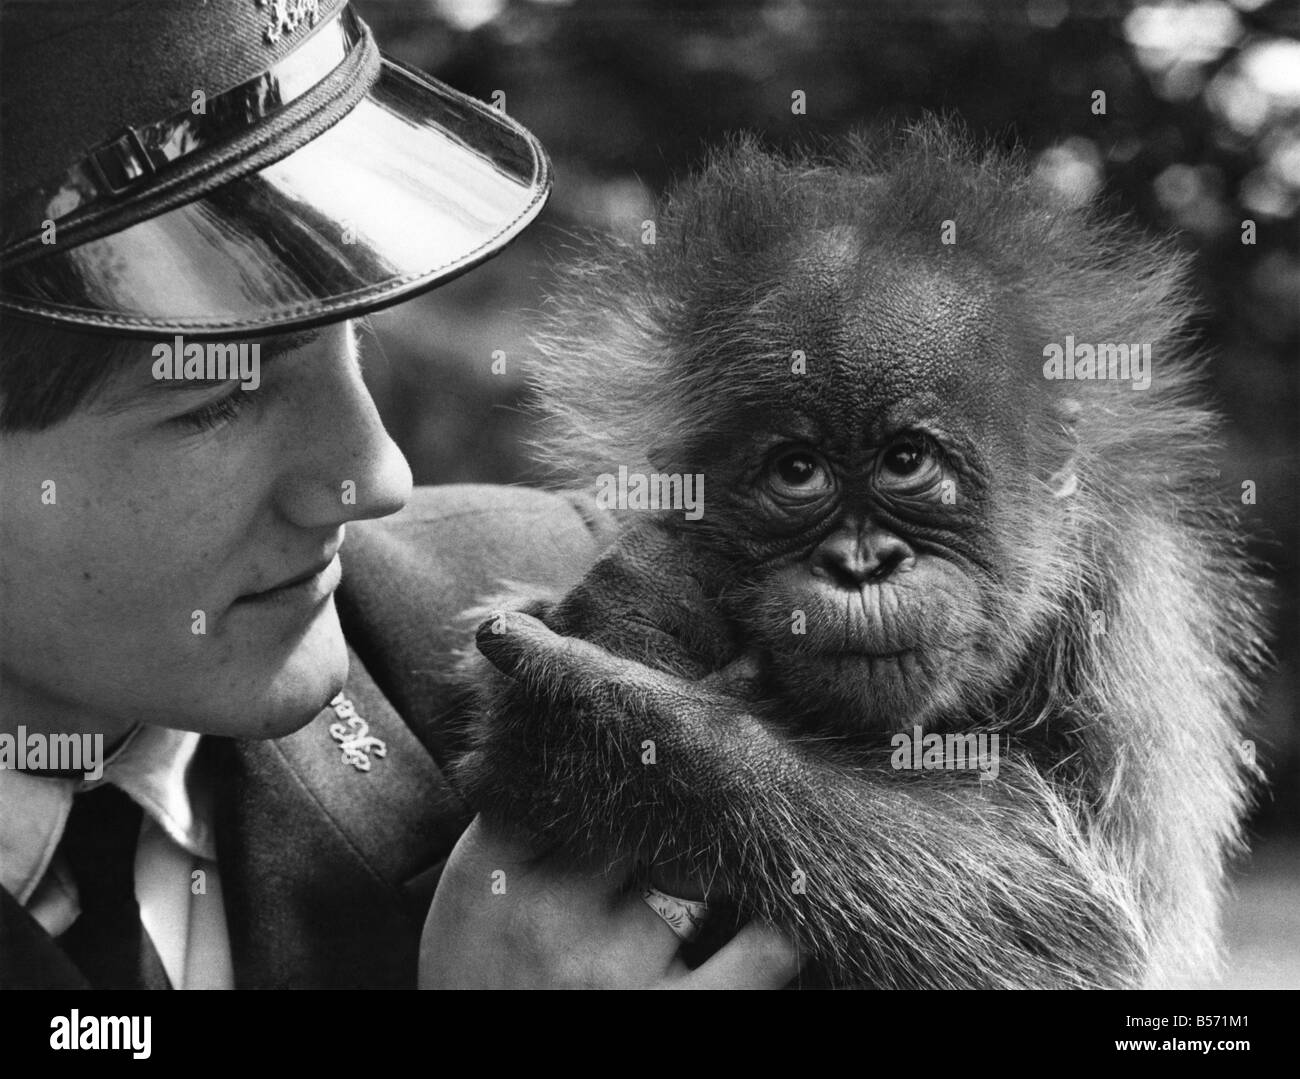 Oscar l'orang-outan peut avoir l'air aimable, mais sa mère n'avait pas l'air de le penser. Elle a rejeté quand il est né. Heureusement toutefois, huit semaines, Oscar se met à très bien avec son compagnon dans la photo - keeper David Gange, qui s'occupe de lui au zoo de Bristol.;Juin 1971;P004080 Banque D'Images